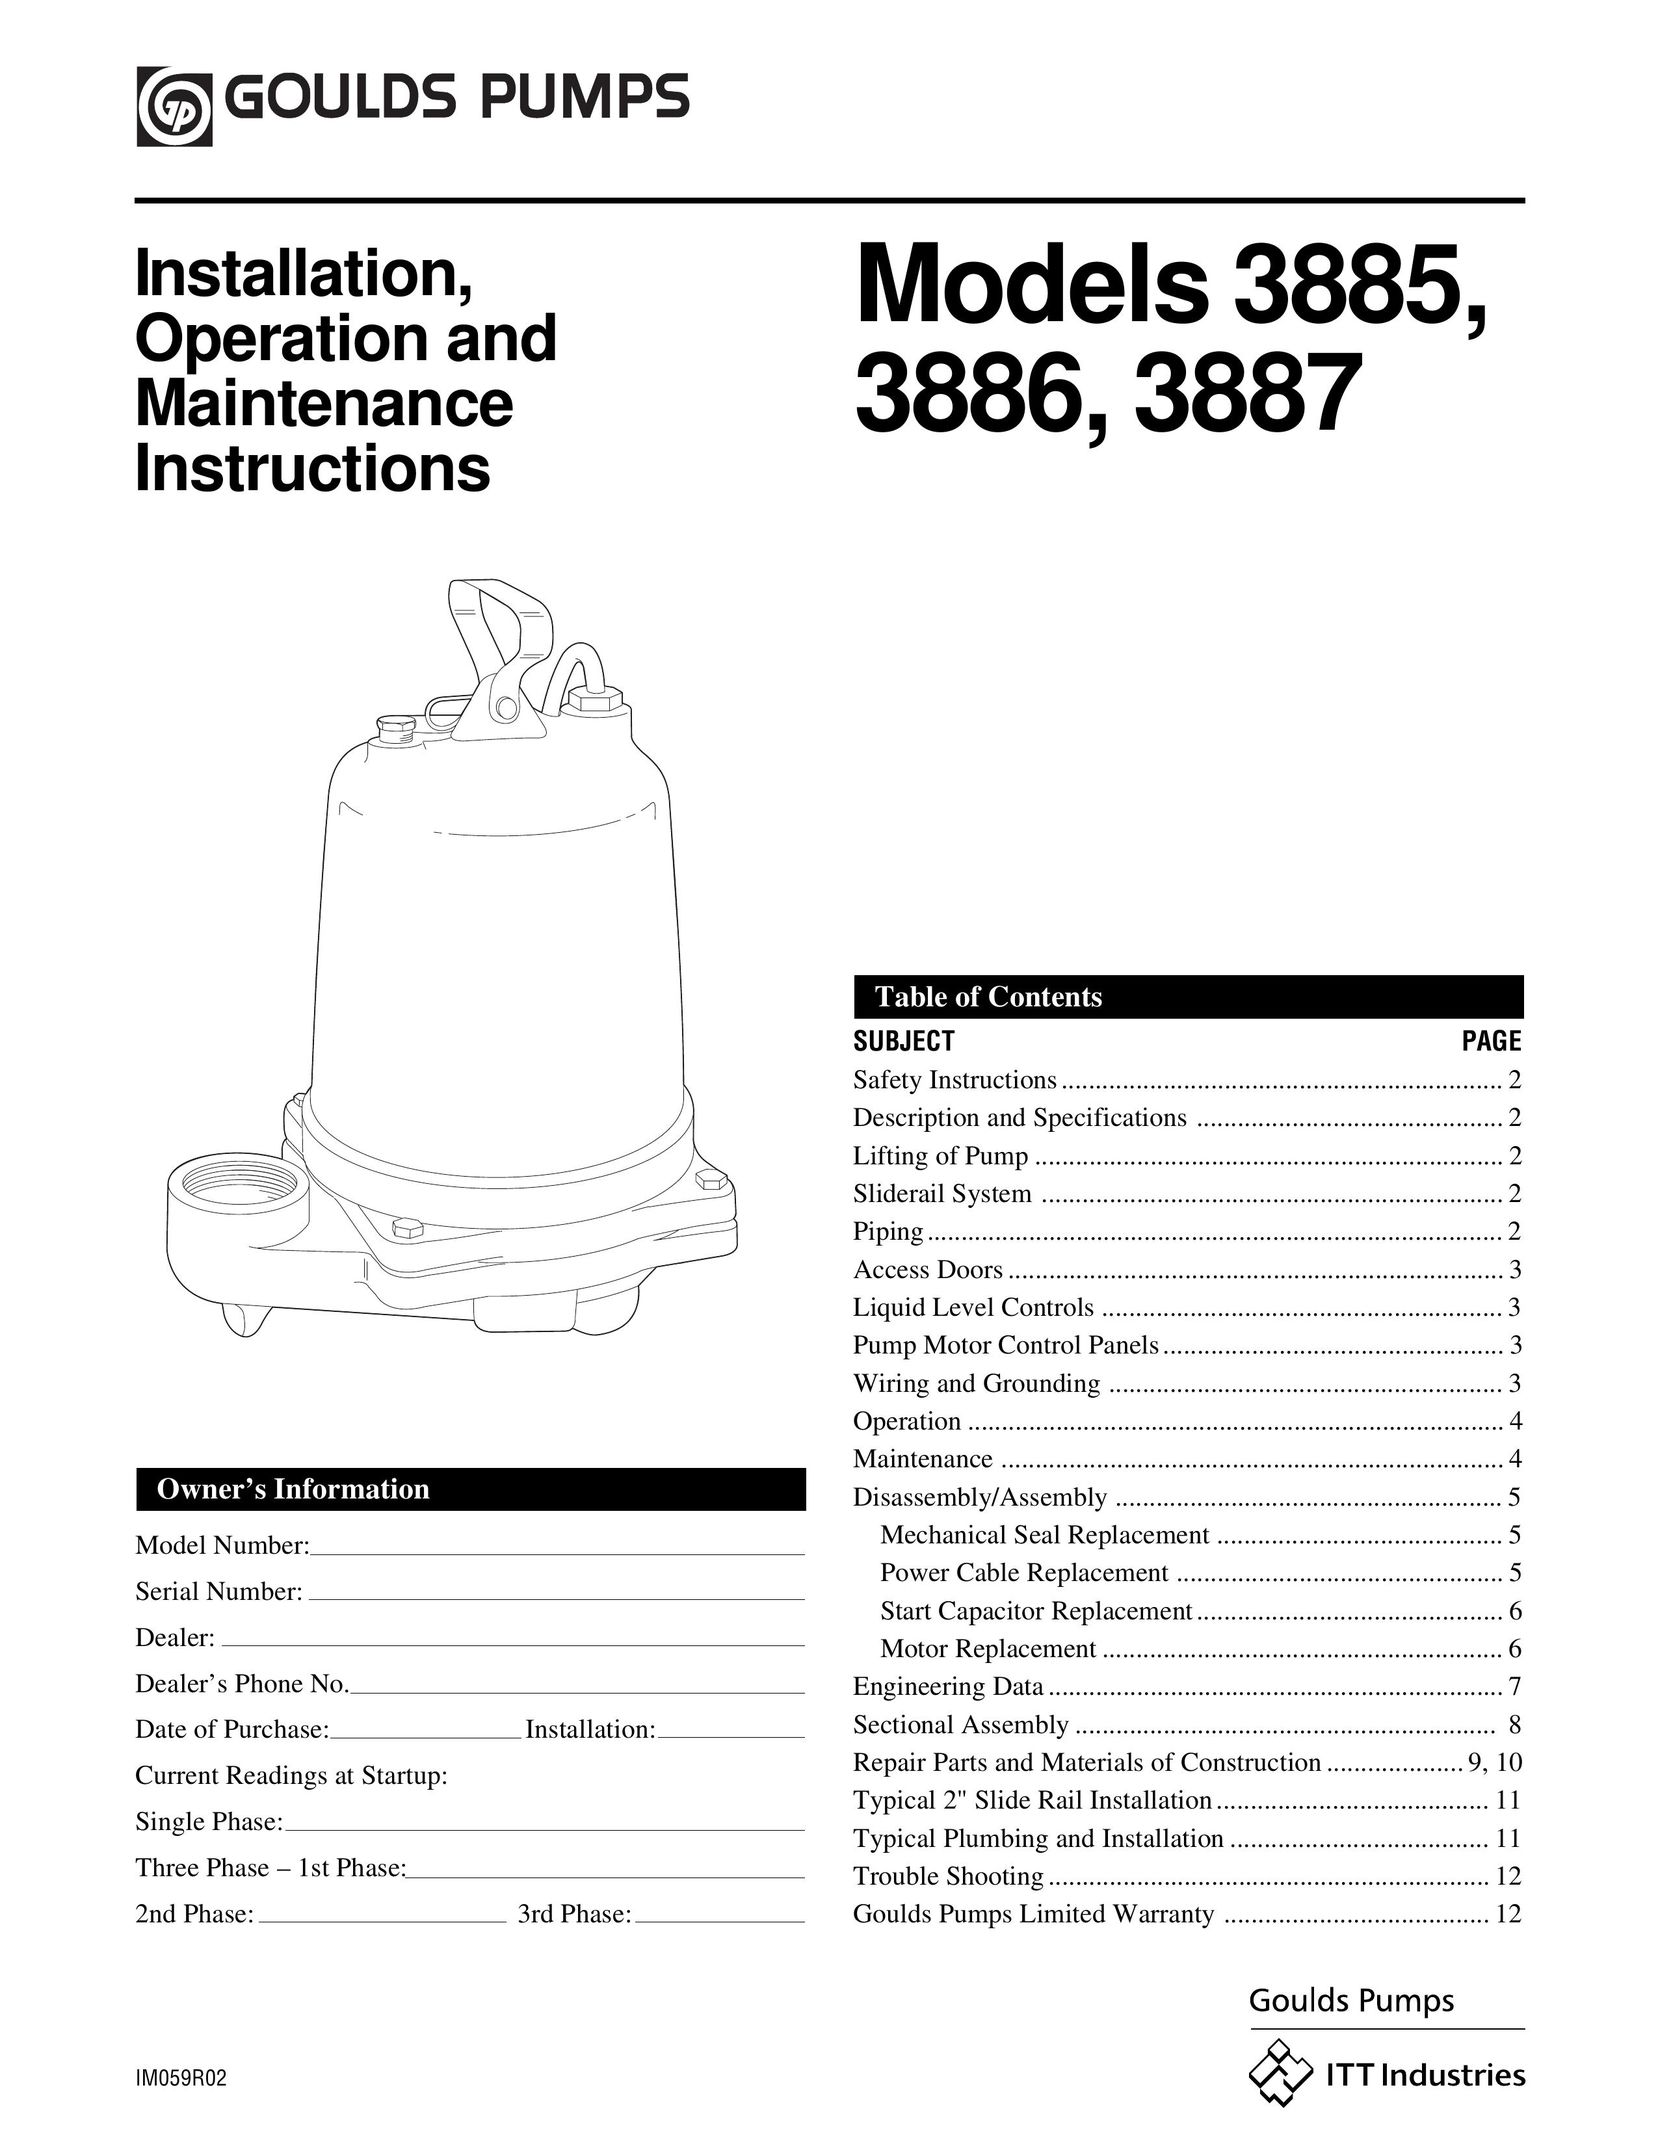 HP (Hewlett-Packard) 3885 Heat Pump User Manual